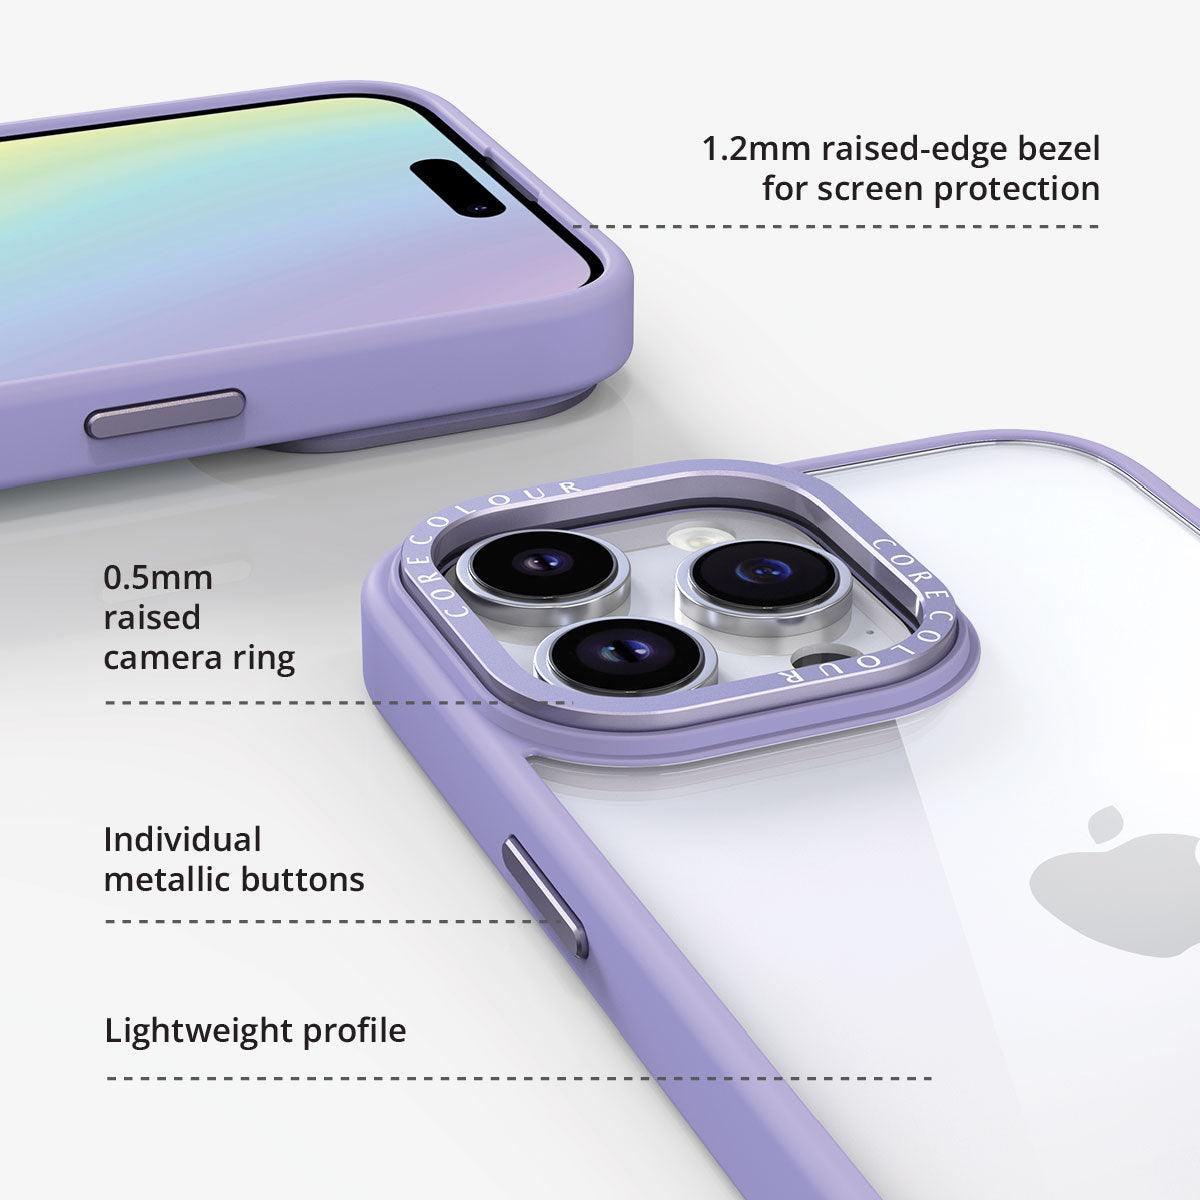 iPhone 14 Pro Max Jet Black Clear Phone Case - CORECOLOUR